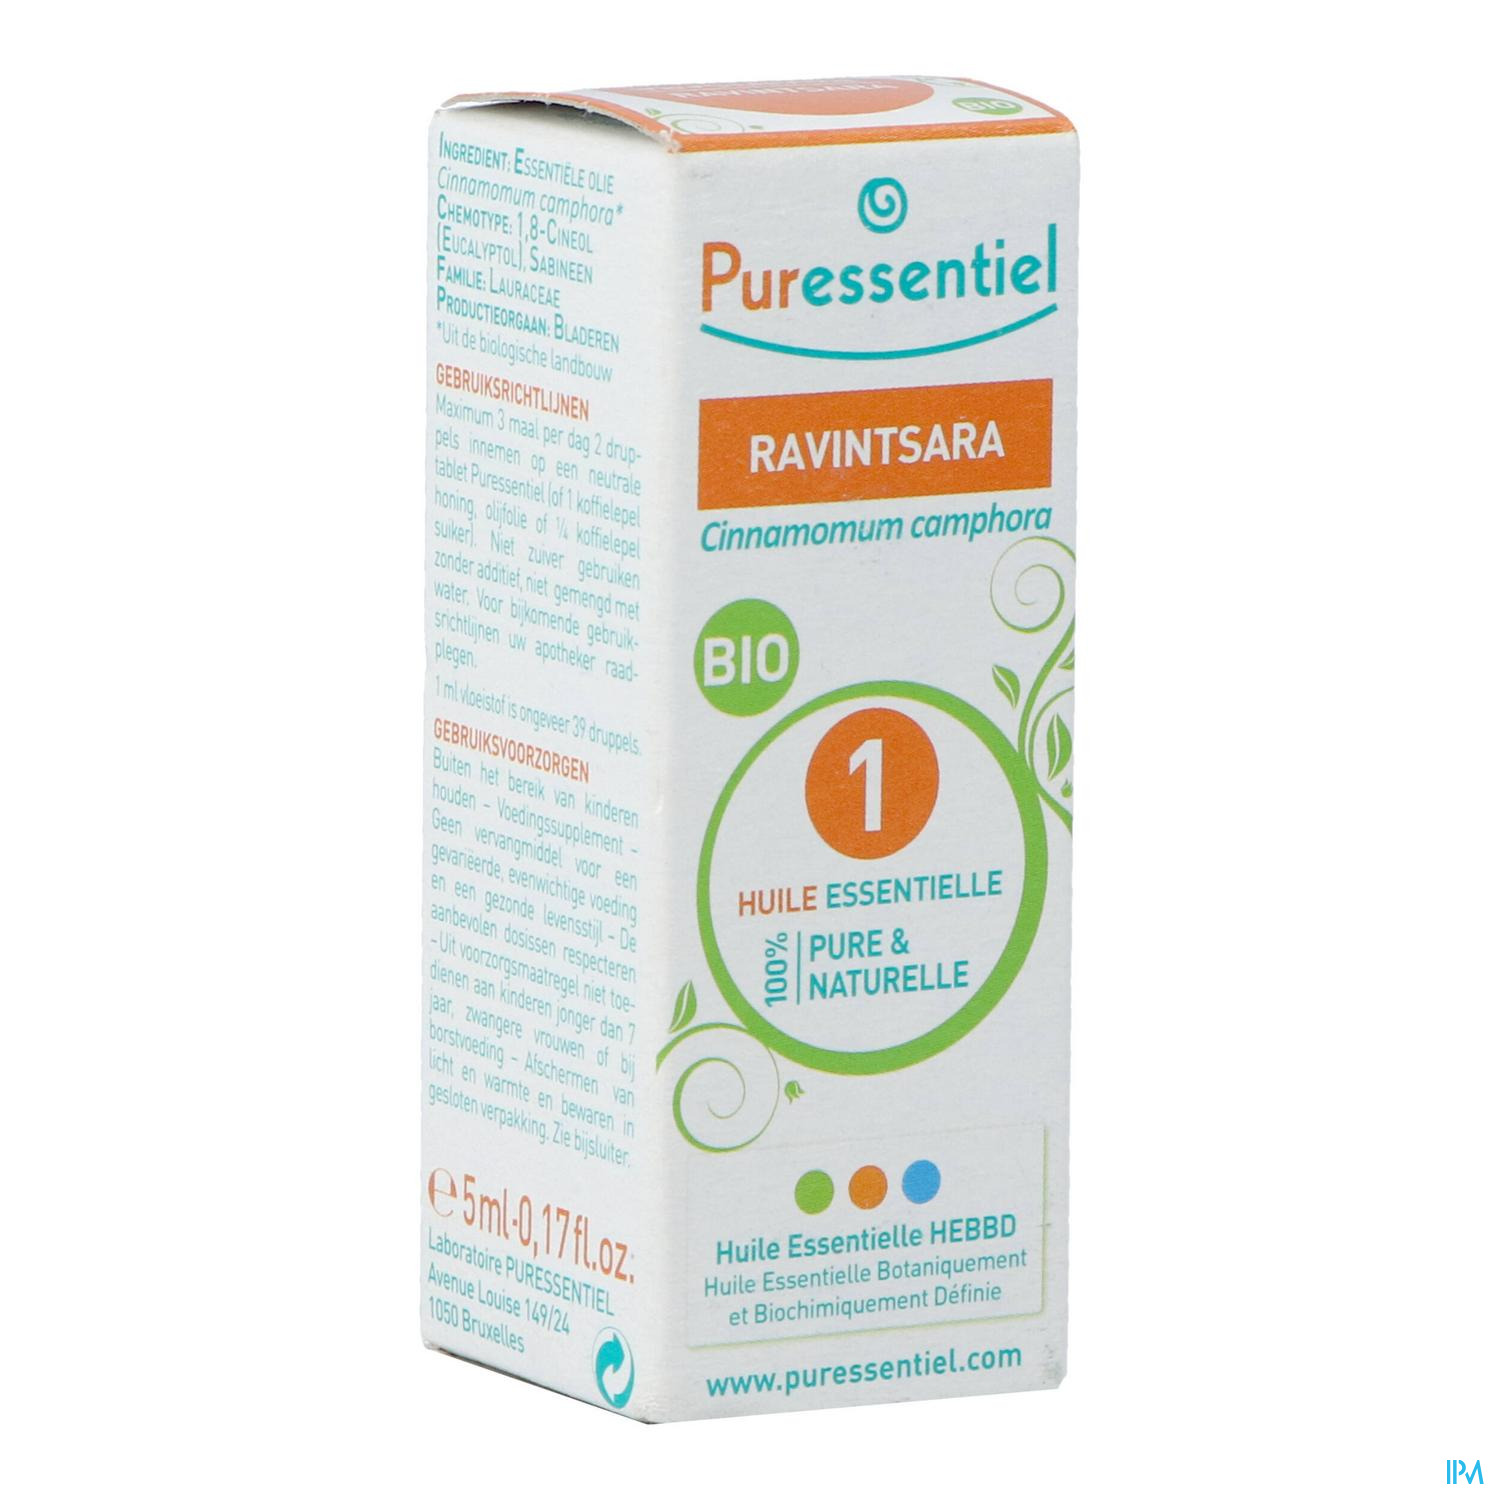 PURESSENTIEL RAVINTSARA BIO Huile essentielle 10 ml - Pharma